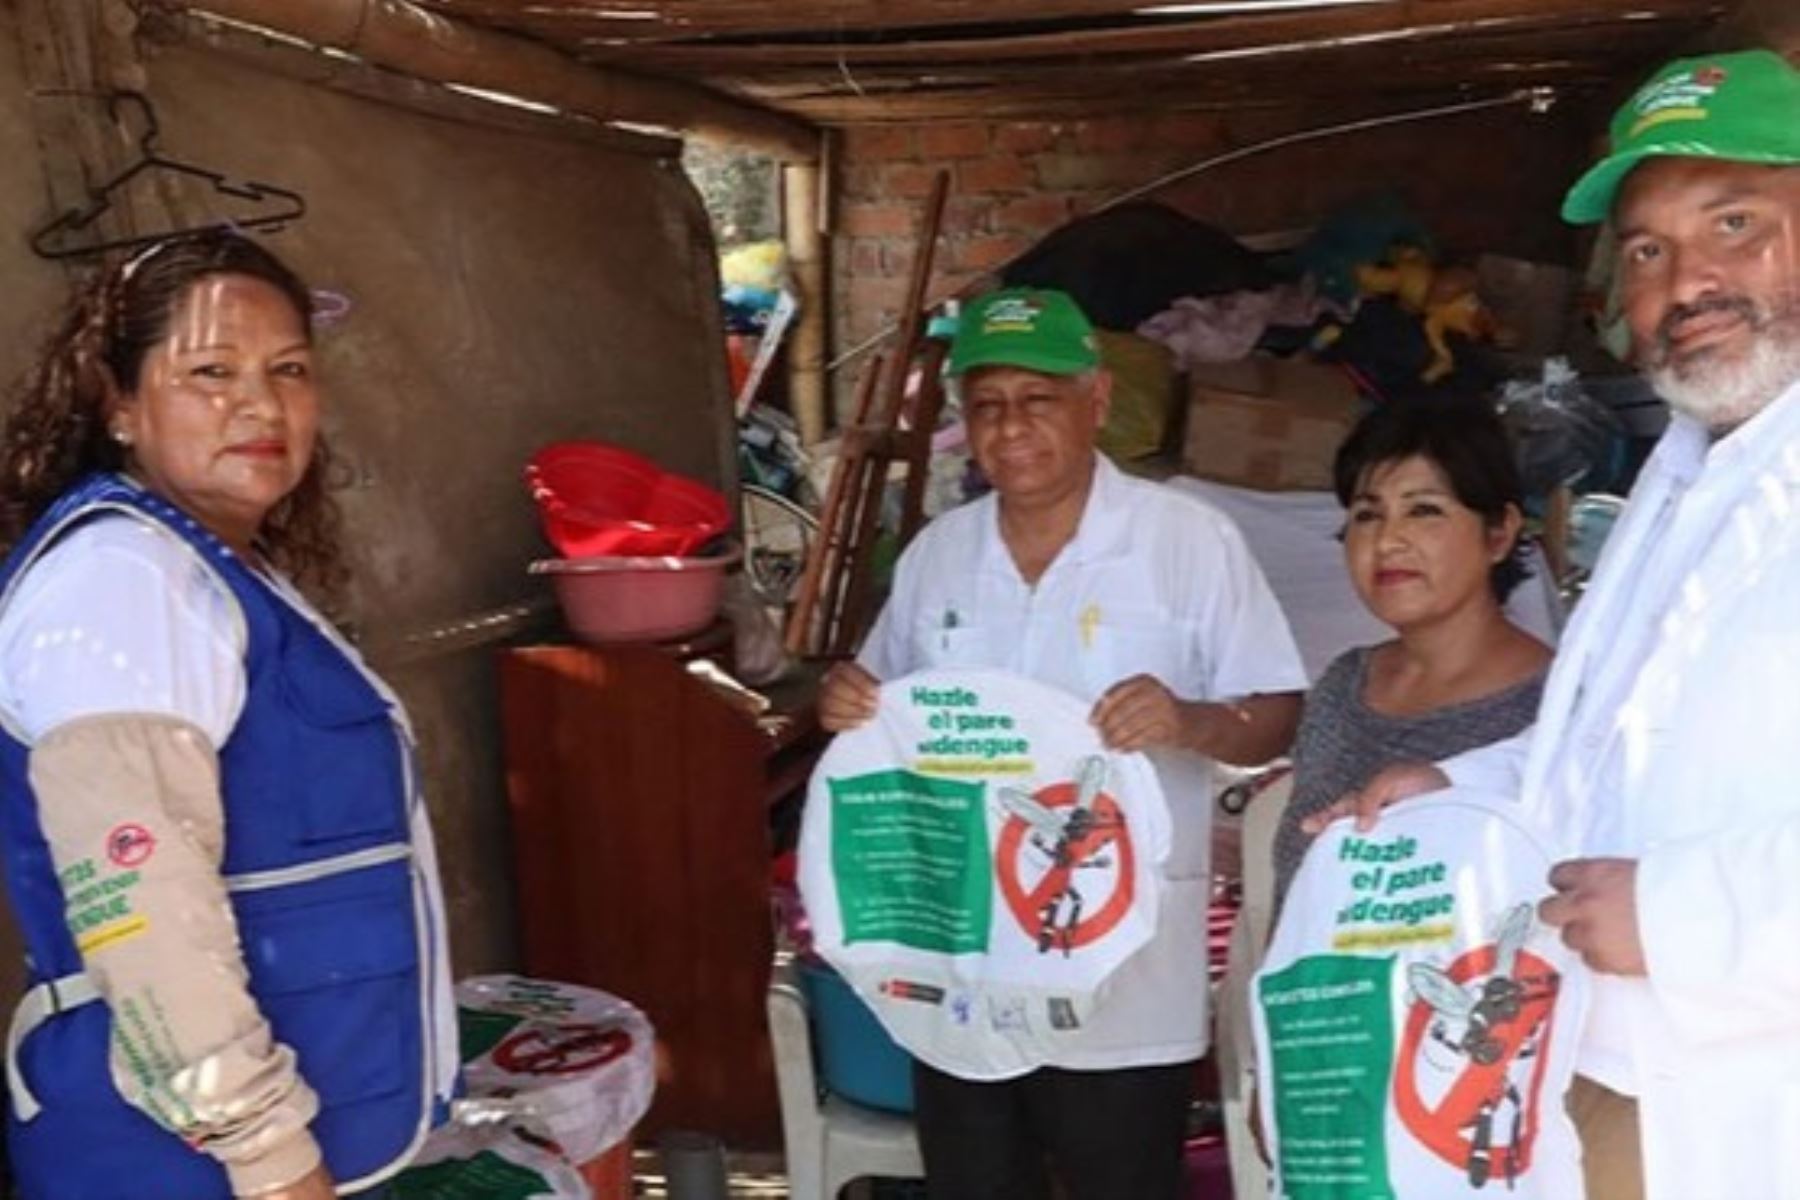 La campaña se inició en la provincia de Chincha, región Ica, con las intervenciones de control larvario. Foto: ANDINA/Minsa